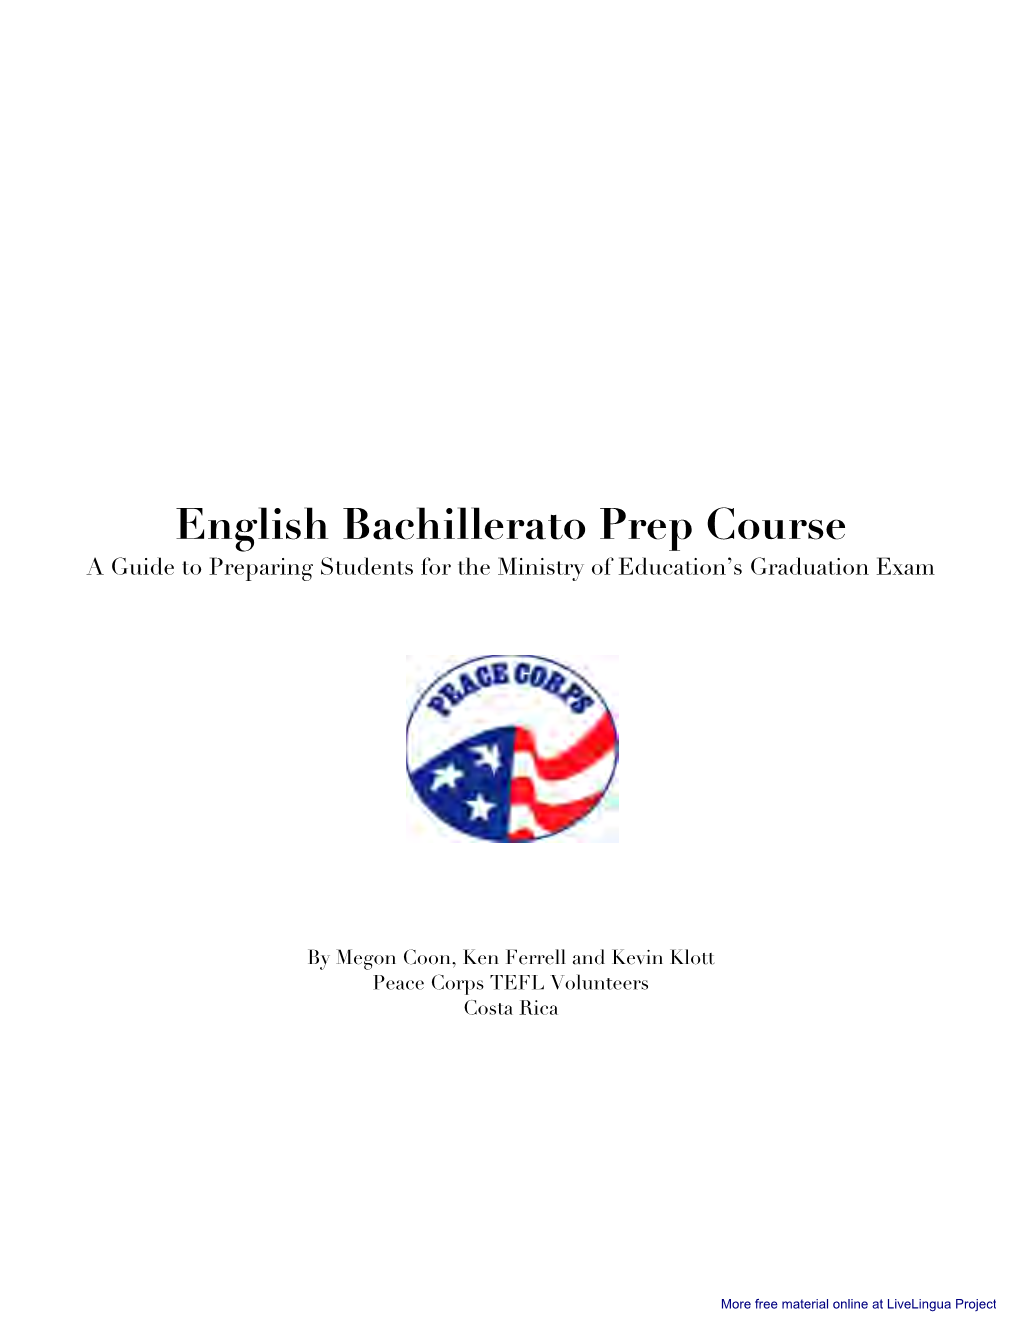 English for Bachillerato Preparation